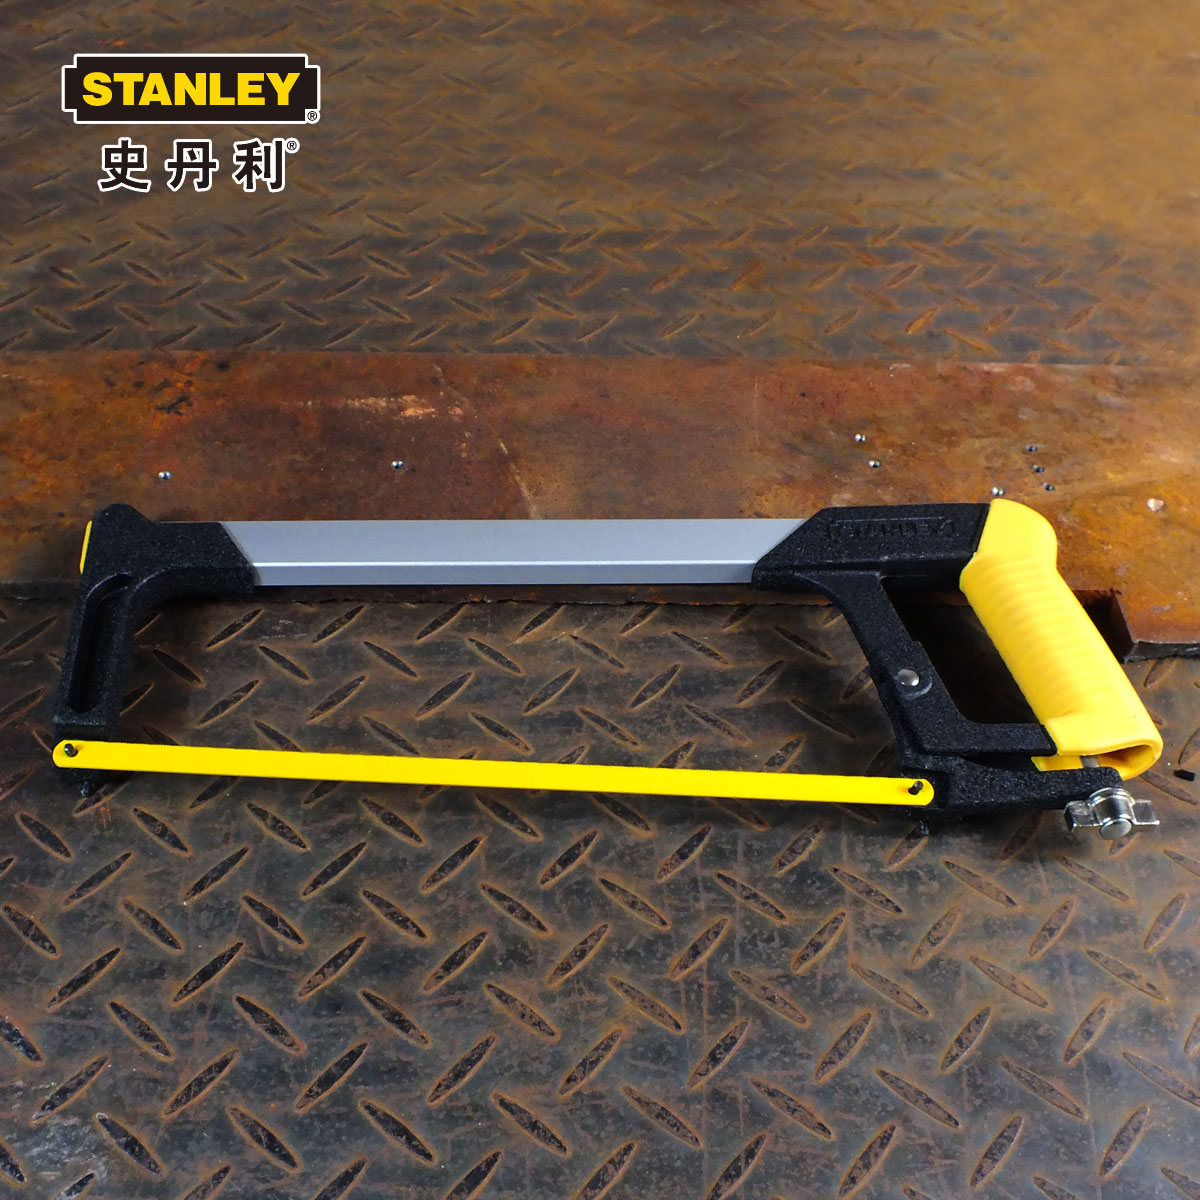 正品 STANLEY/史丹利 400mm钢锯架 15-166-22 手工锯 锯弓 锯条架